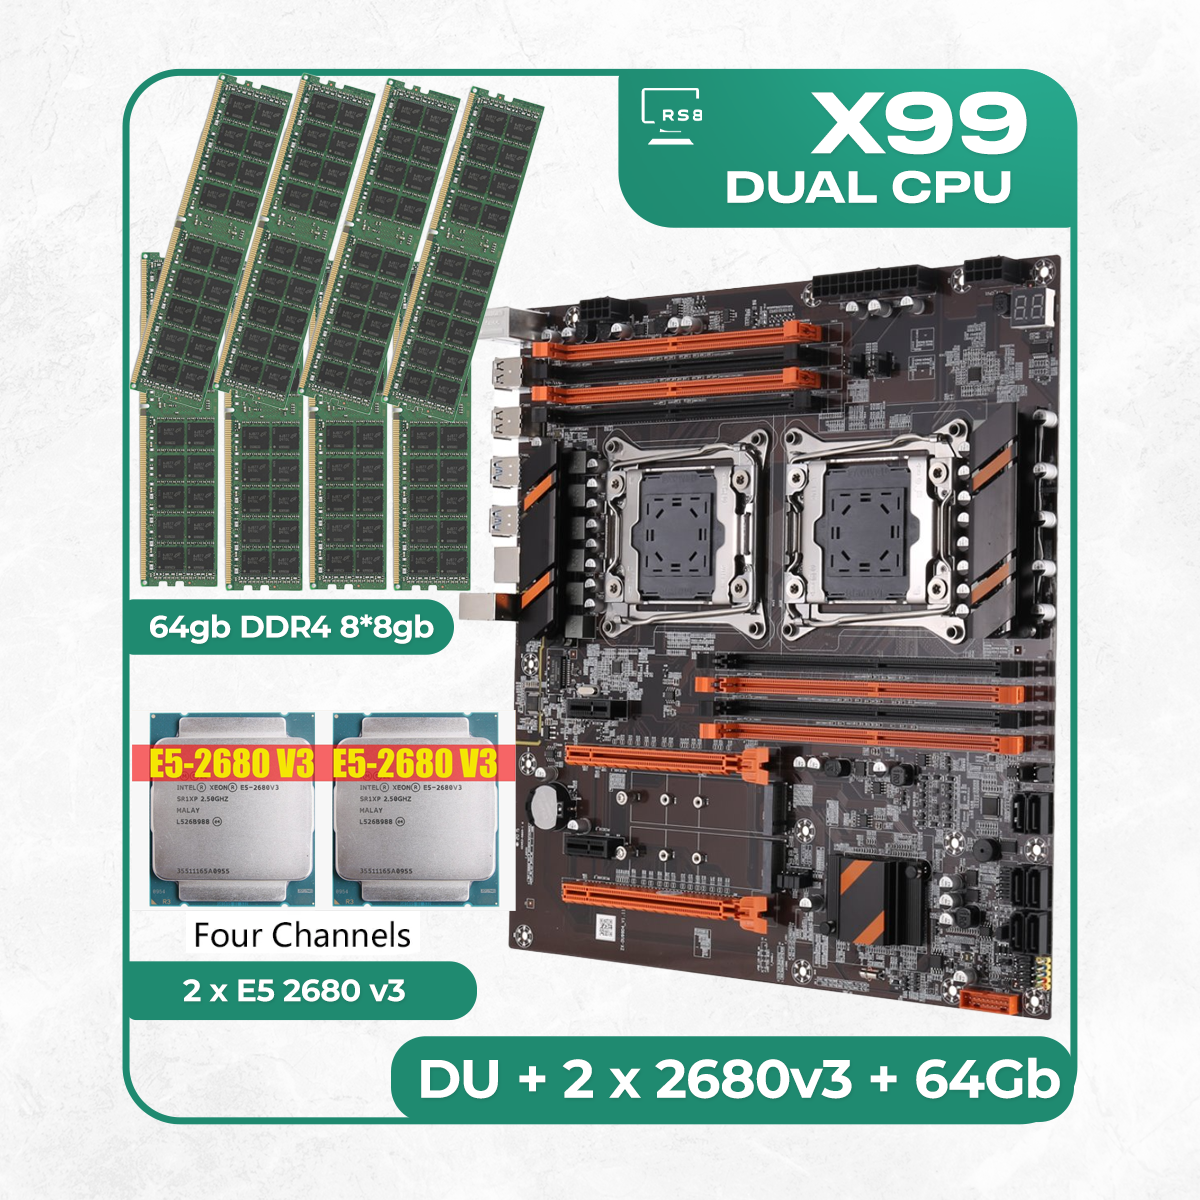 Комплект материнской платы X99: ZX-DU99D4 + 2 x Xeon E5 2680v3 + DDR4 64Гб 8х8Гб